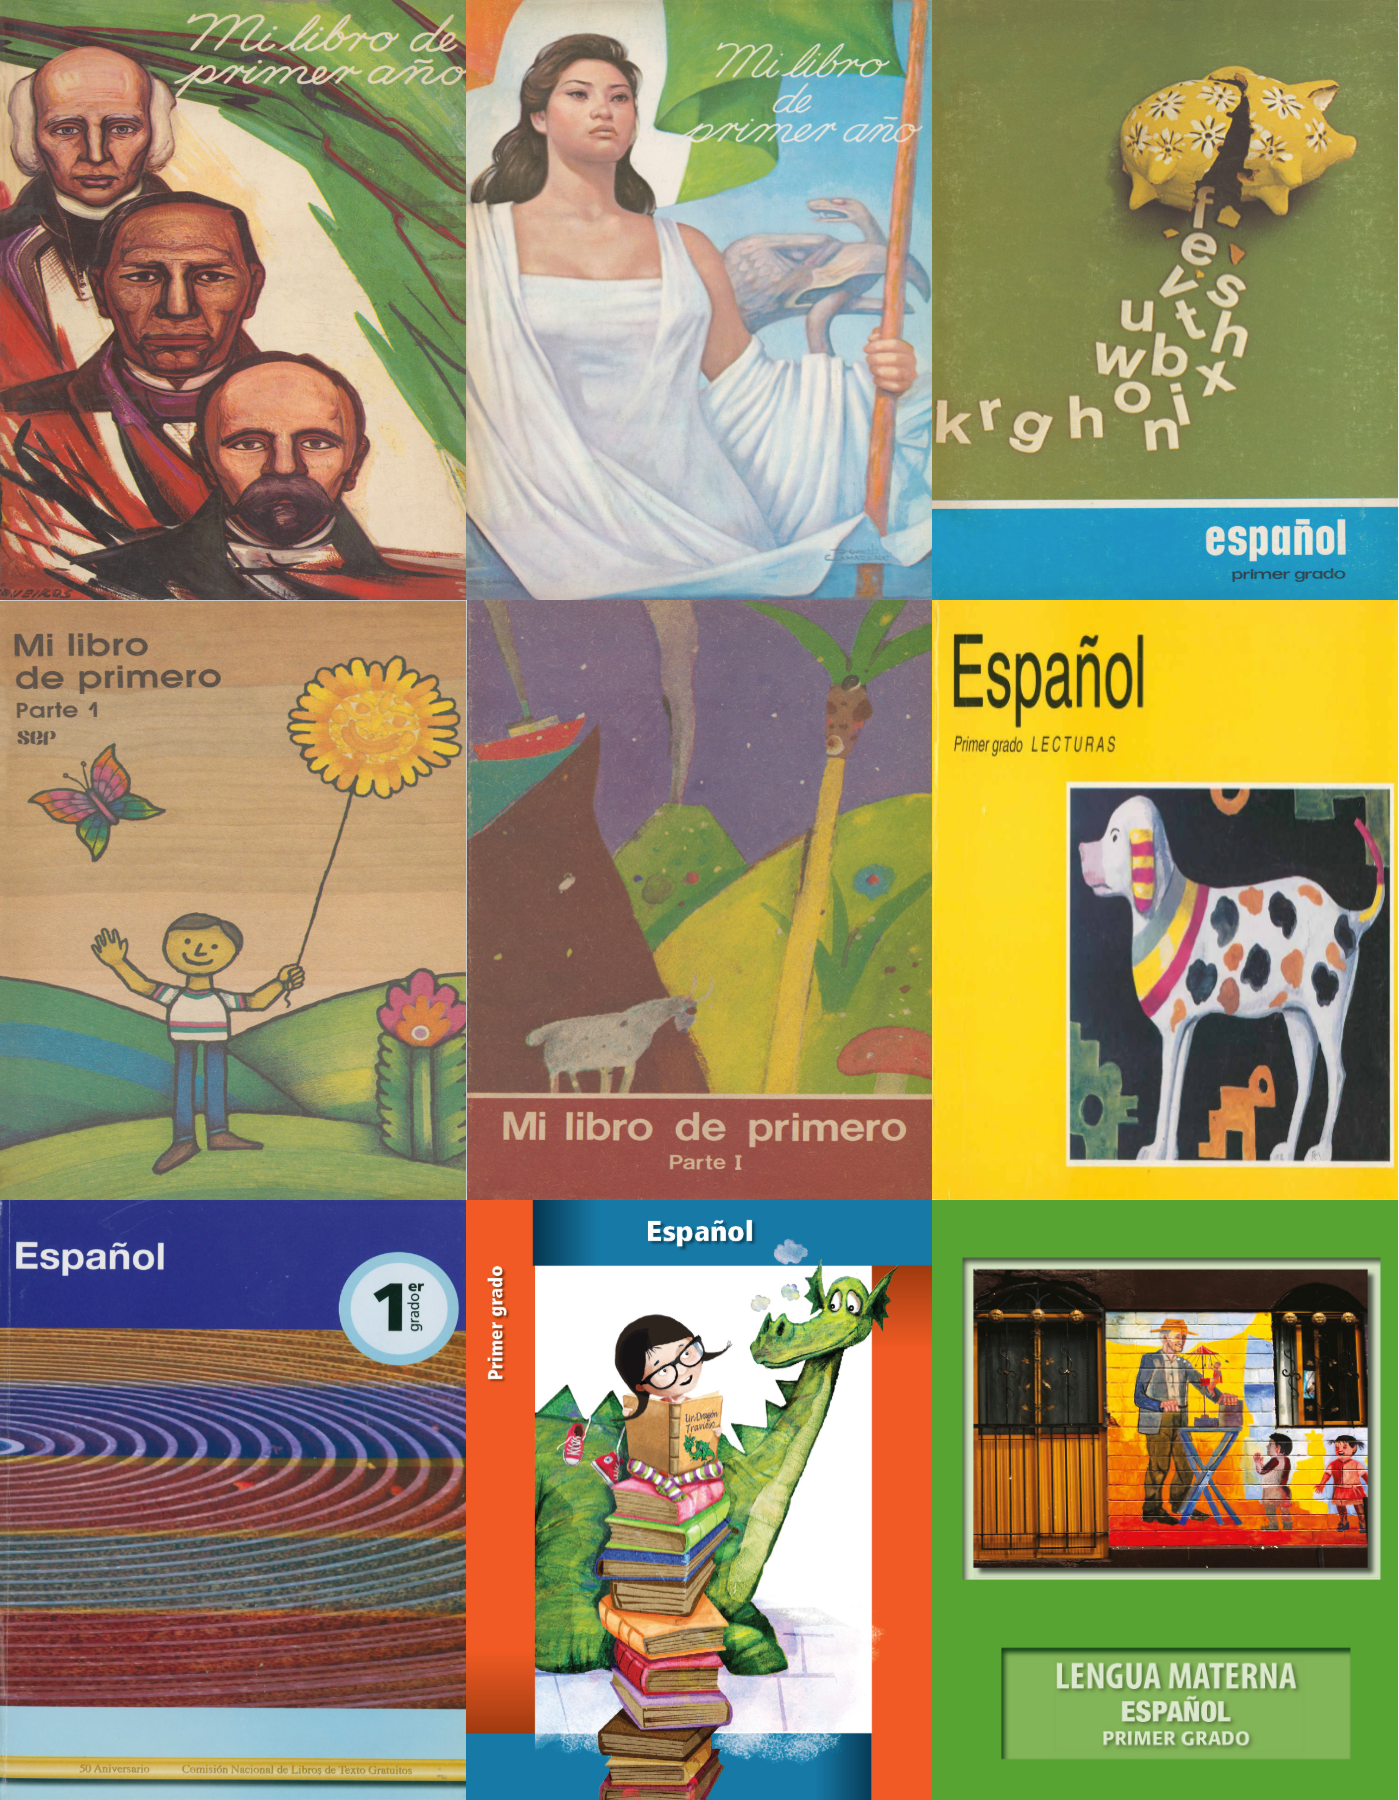 Estas son todas las portadas de los libros de texto, desde su primera emisión en 1960 hasta los que se utilizaran este año; en total son 10 ediciones.